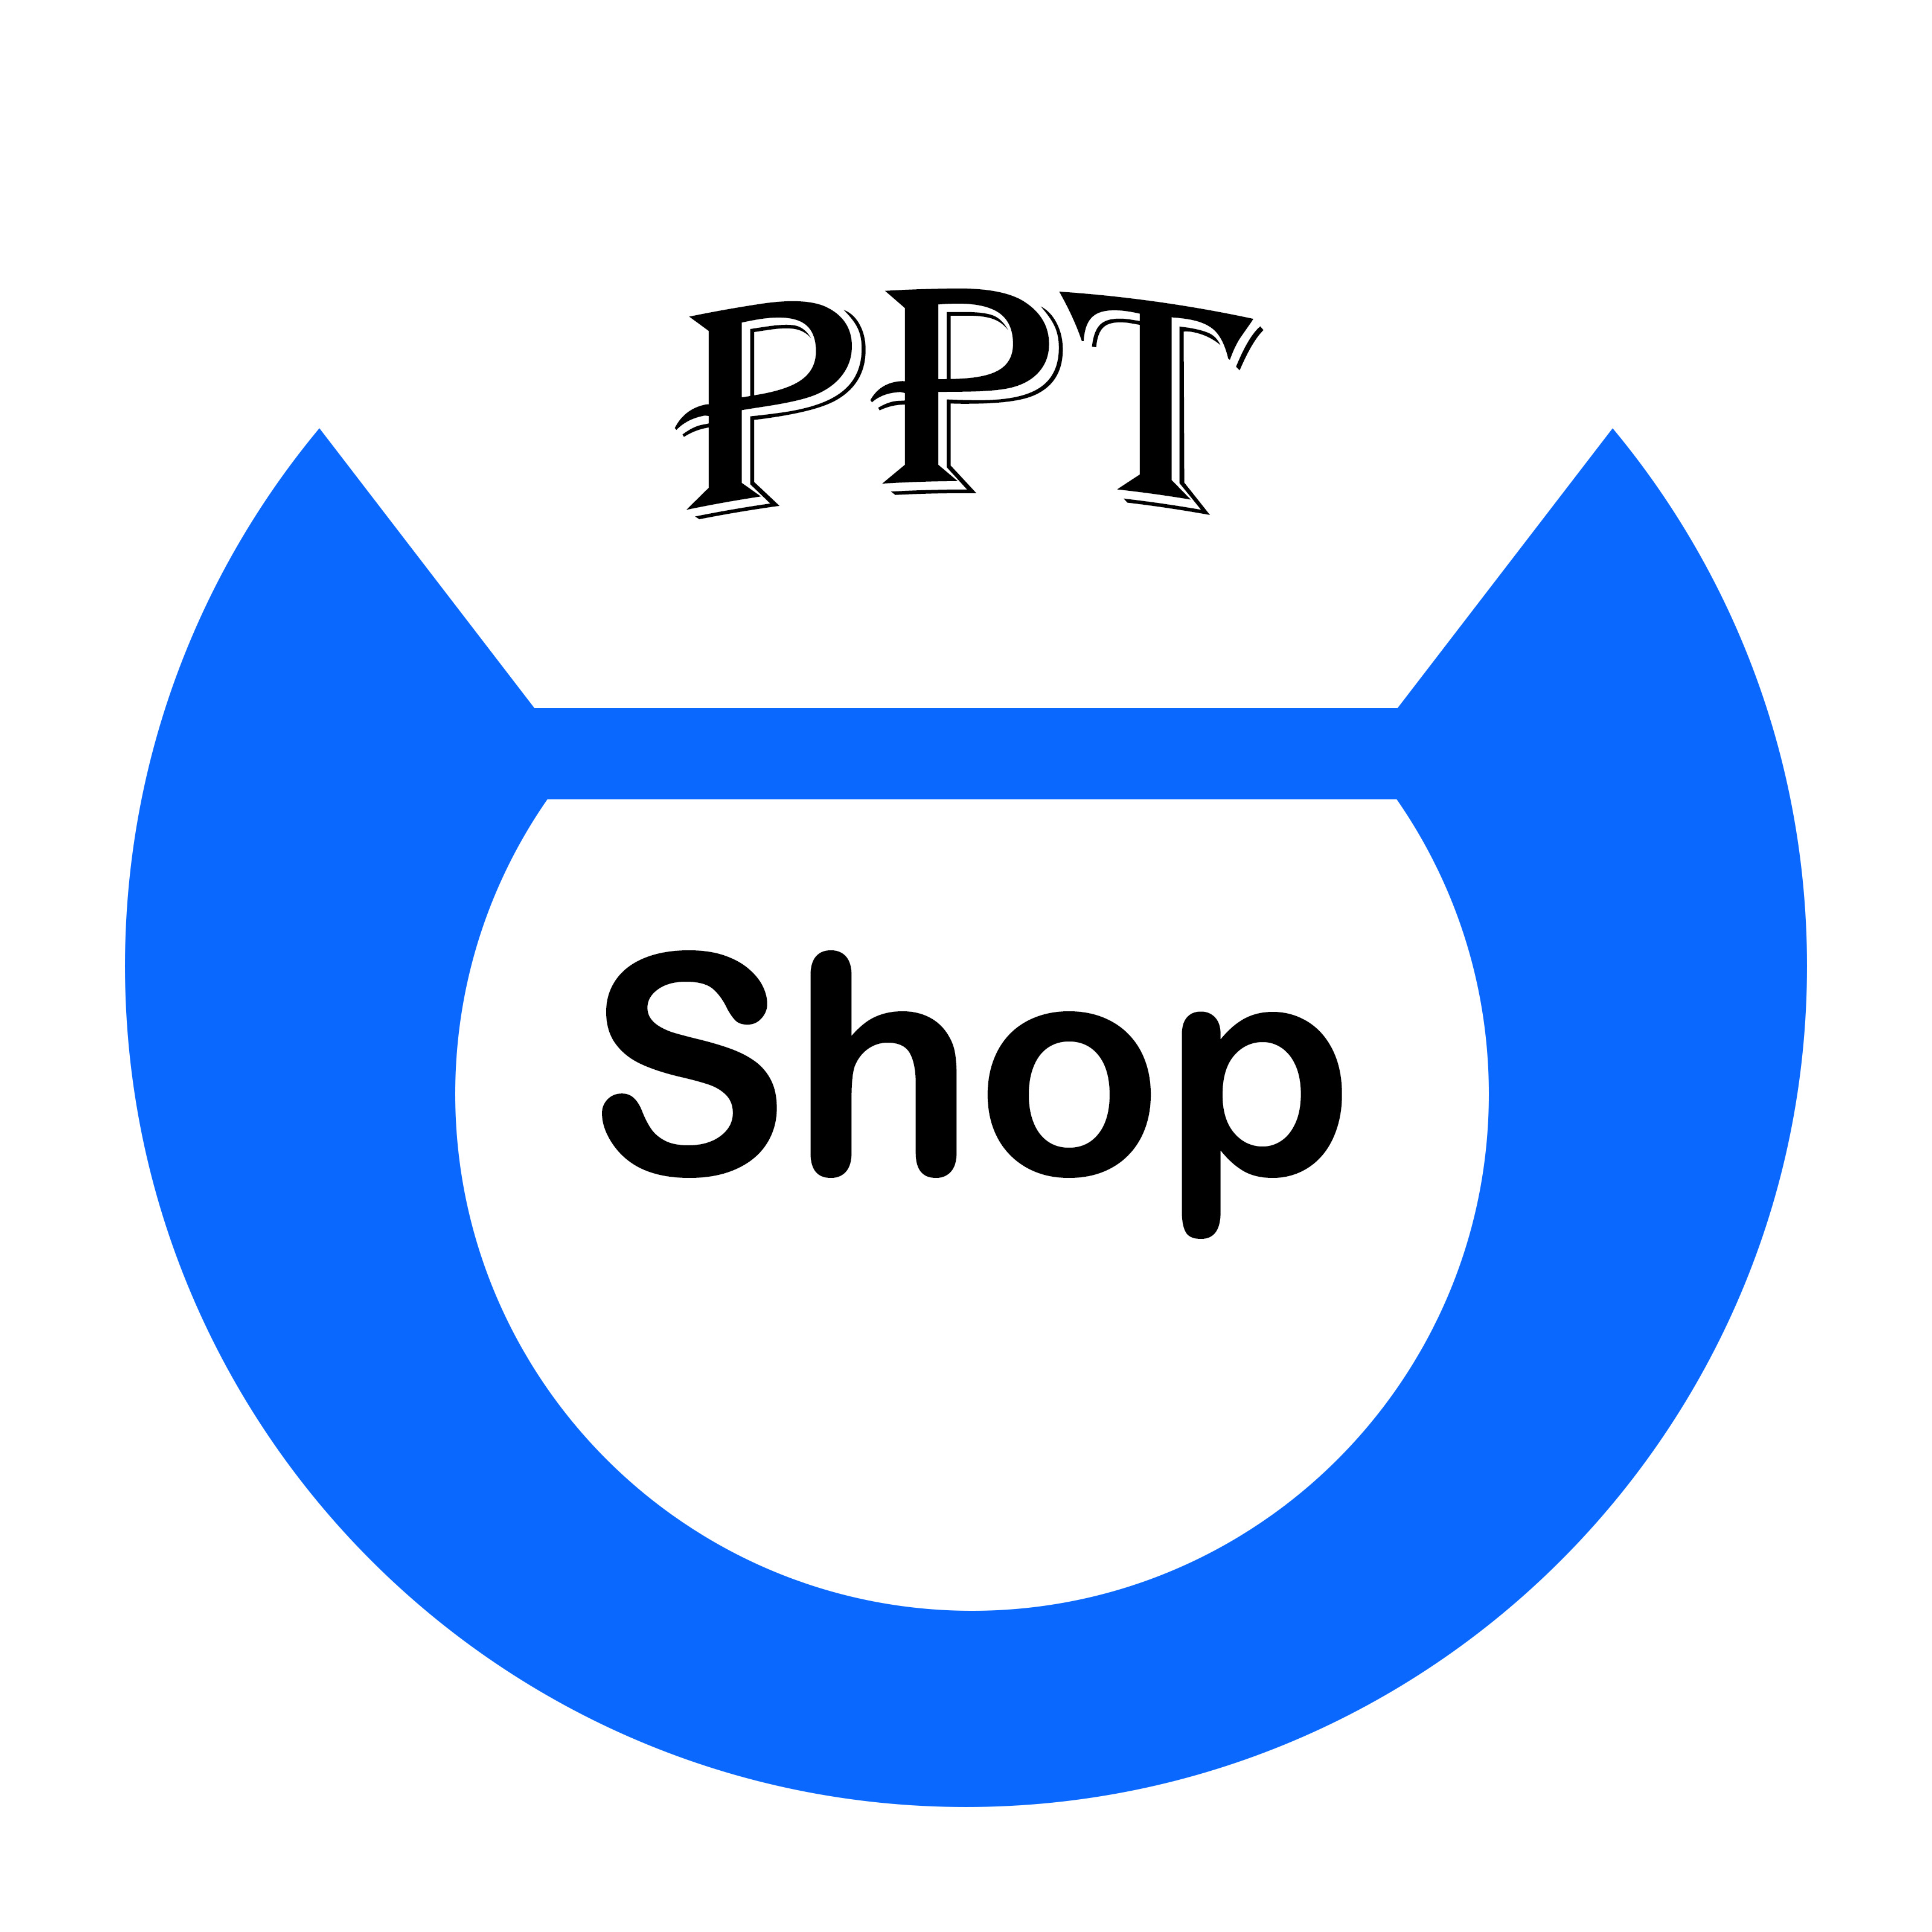 PPT Shop